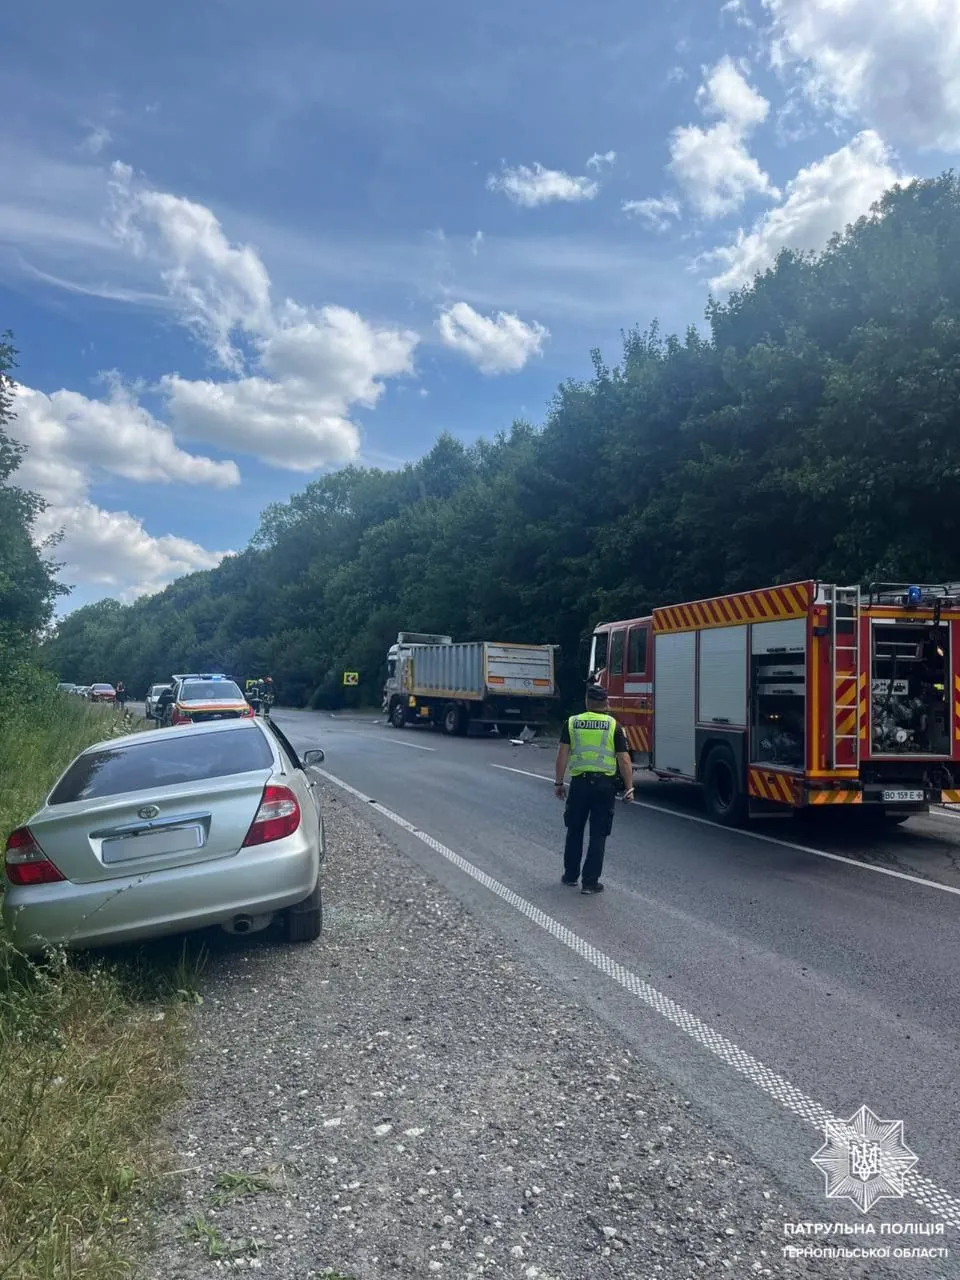 ДТП с травмированными произошло на трассе в Тернопольской области: движение транспорта затруднено